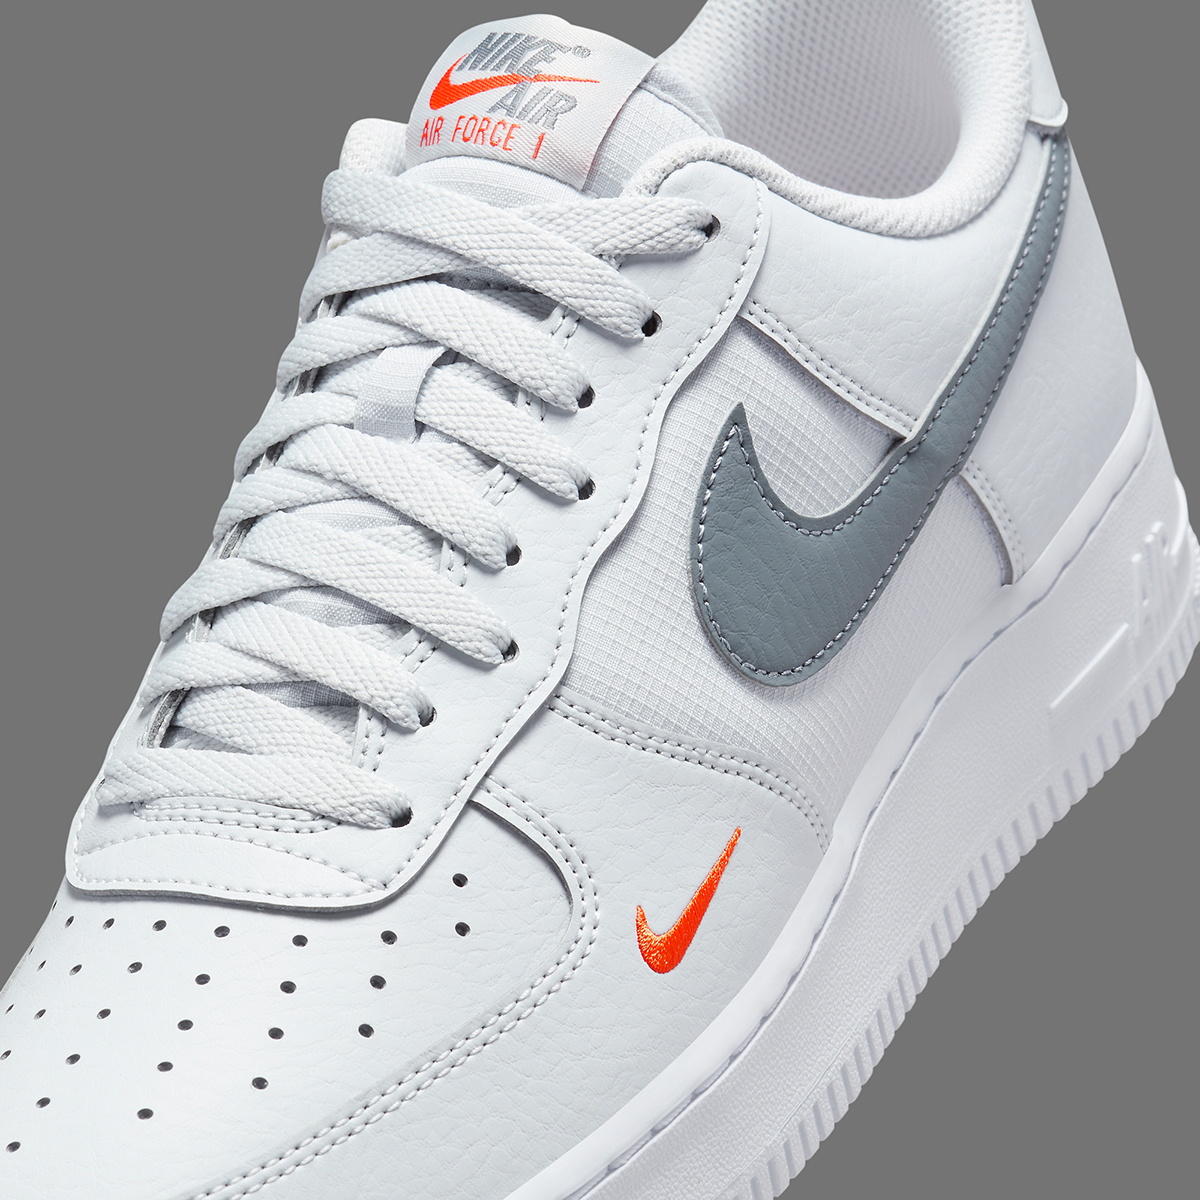 Nike Air Force 1 Low White Grey Orange Hf3836 001 4